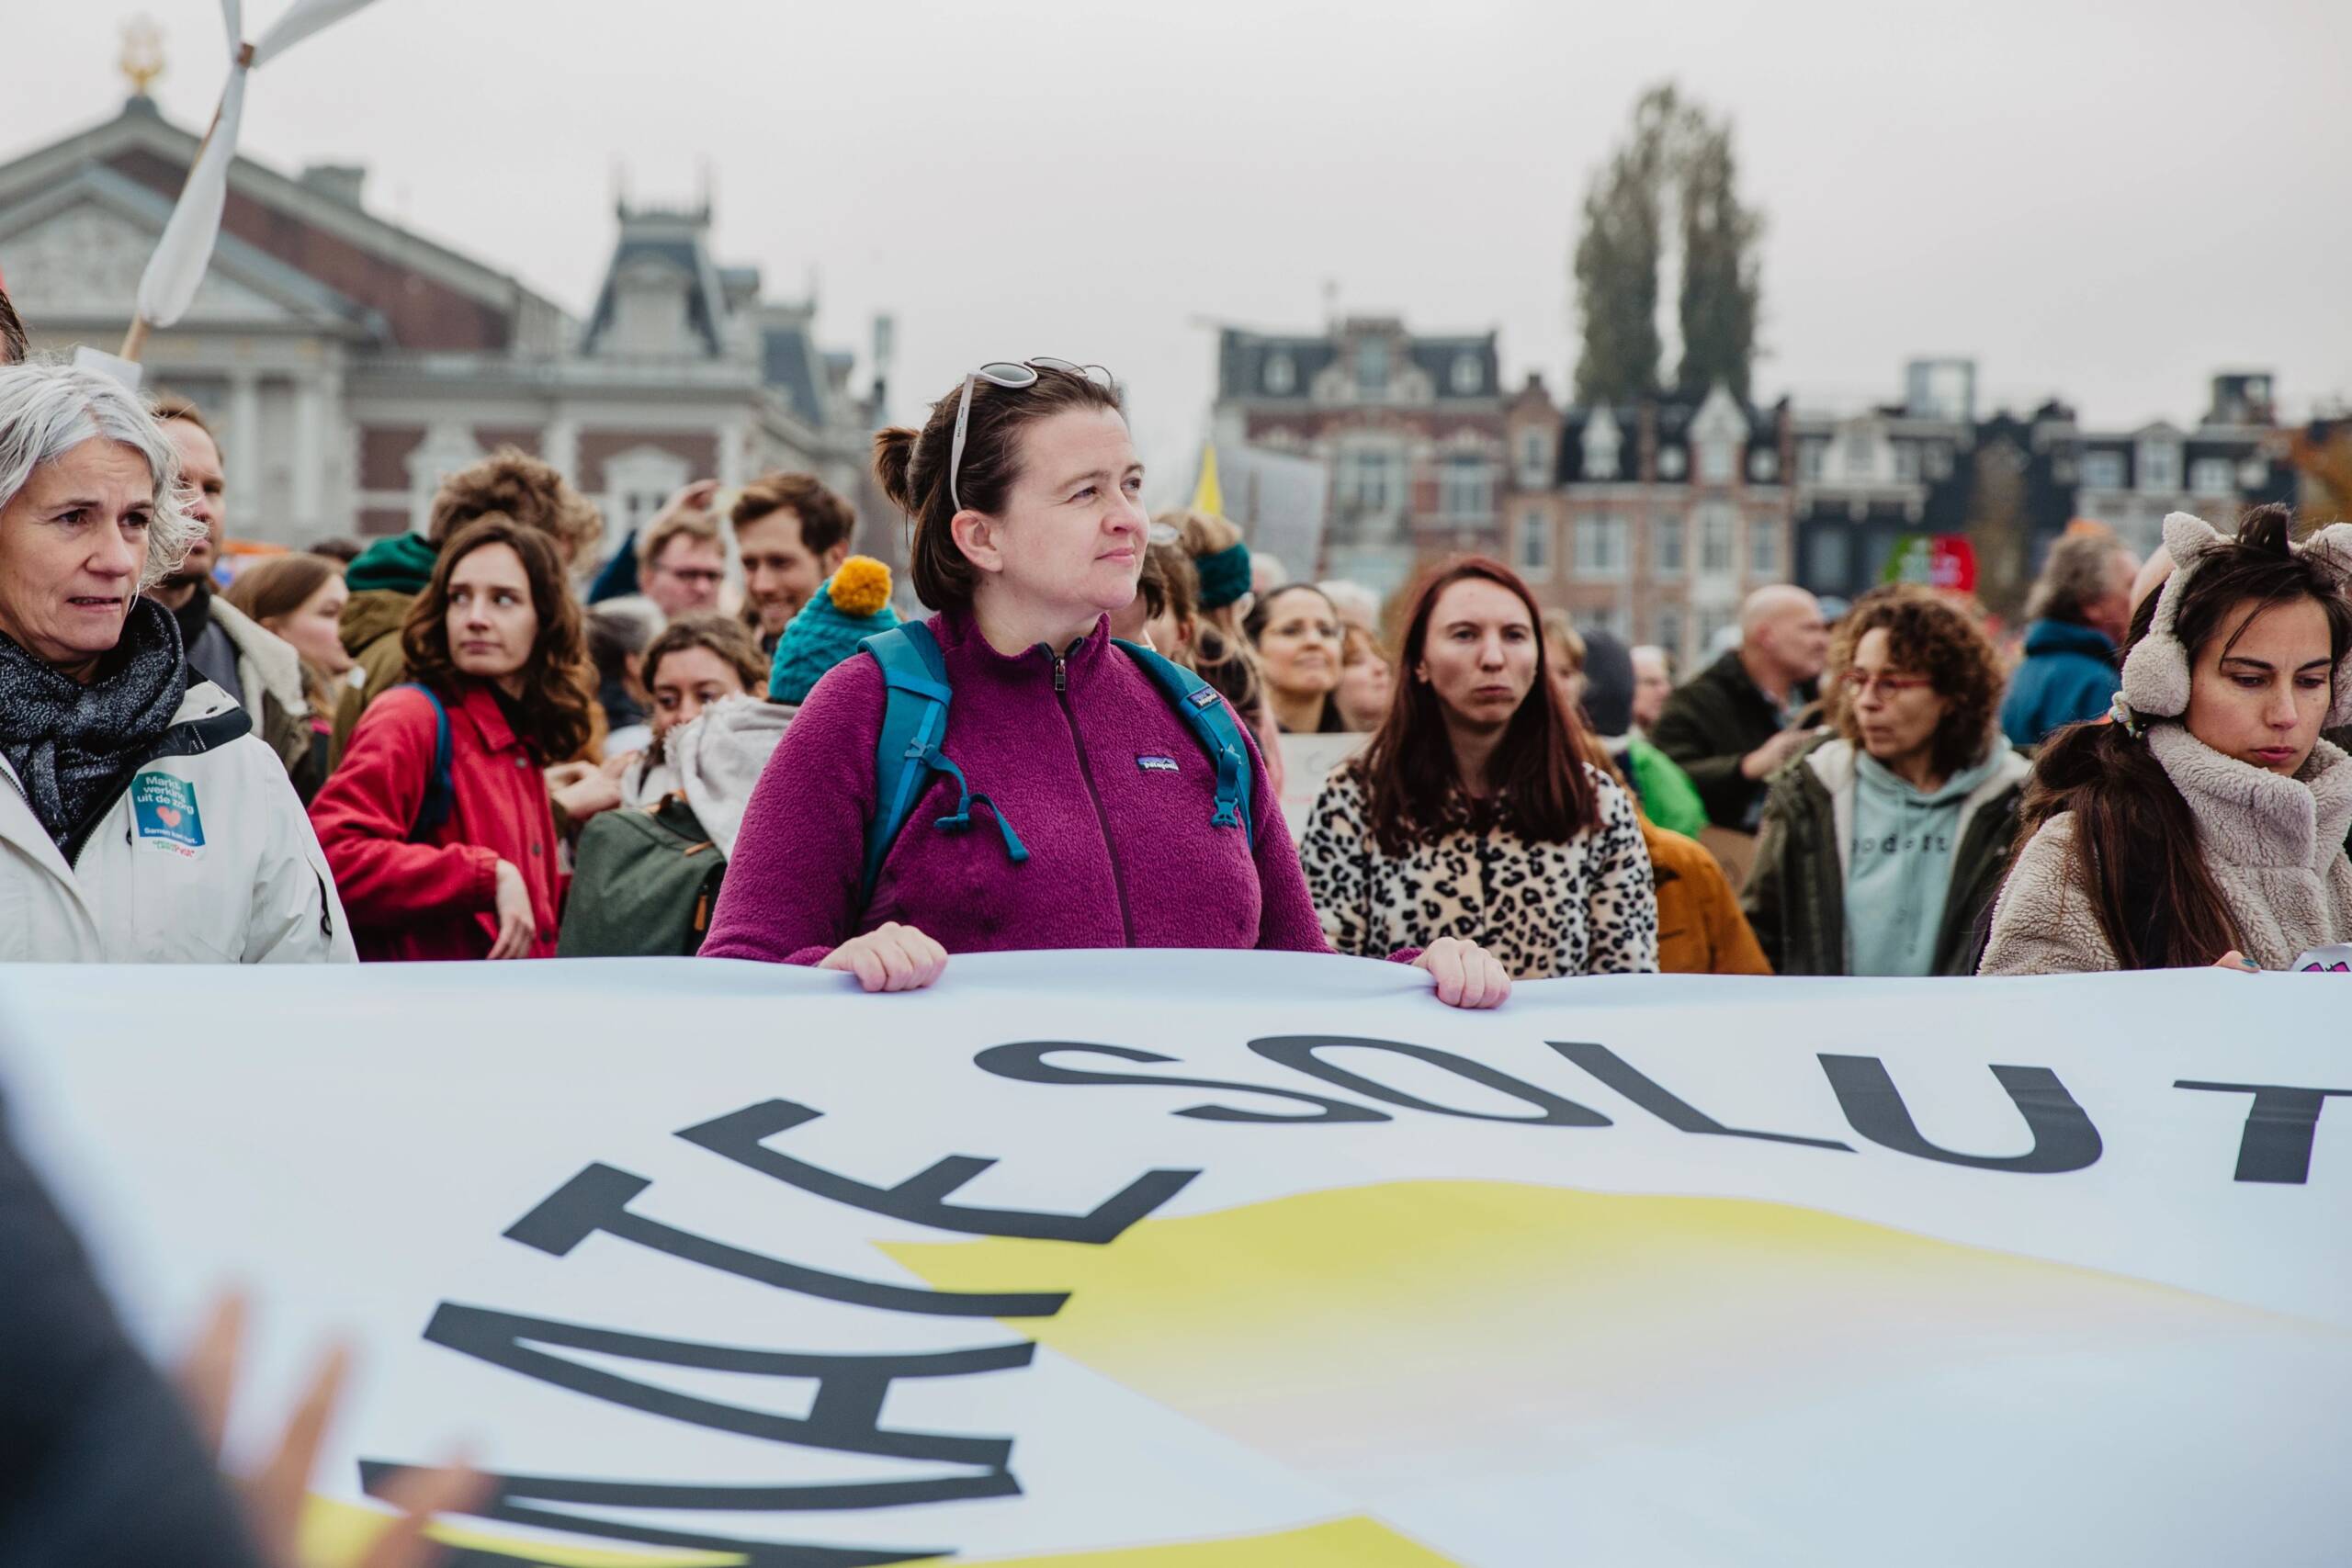 オランダ アムステルダム 11月12日：350.orgとFossielvrij NLが再生可能エネルギーの普及を求め、アムステルダムでは記録的な規模の気候マーチとなった。85,000人以上が街頭に繰り出している。写真提供：Laura Ponchel / Fossielvrij NL